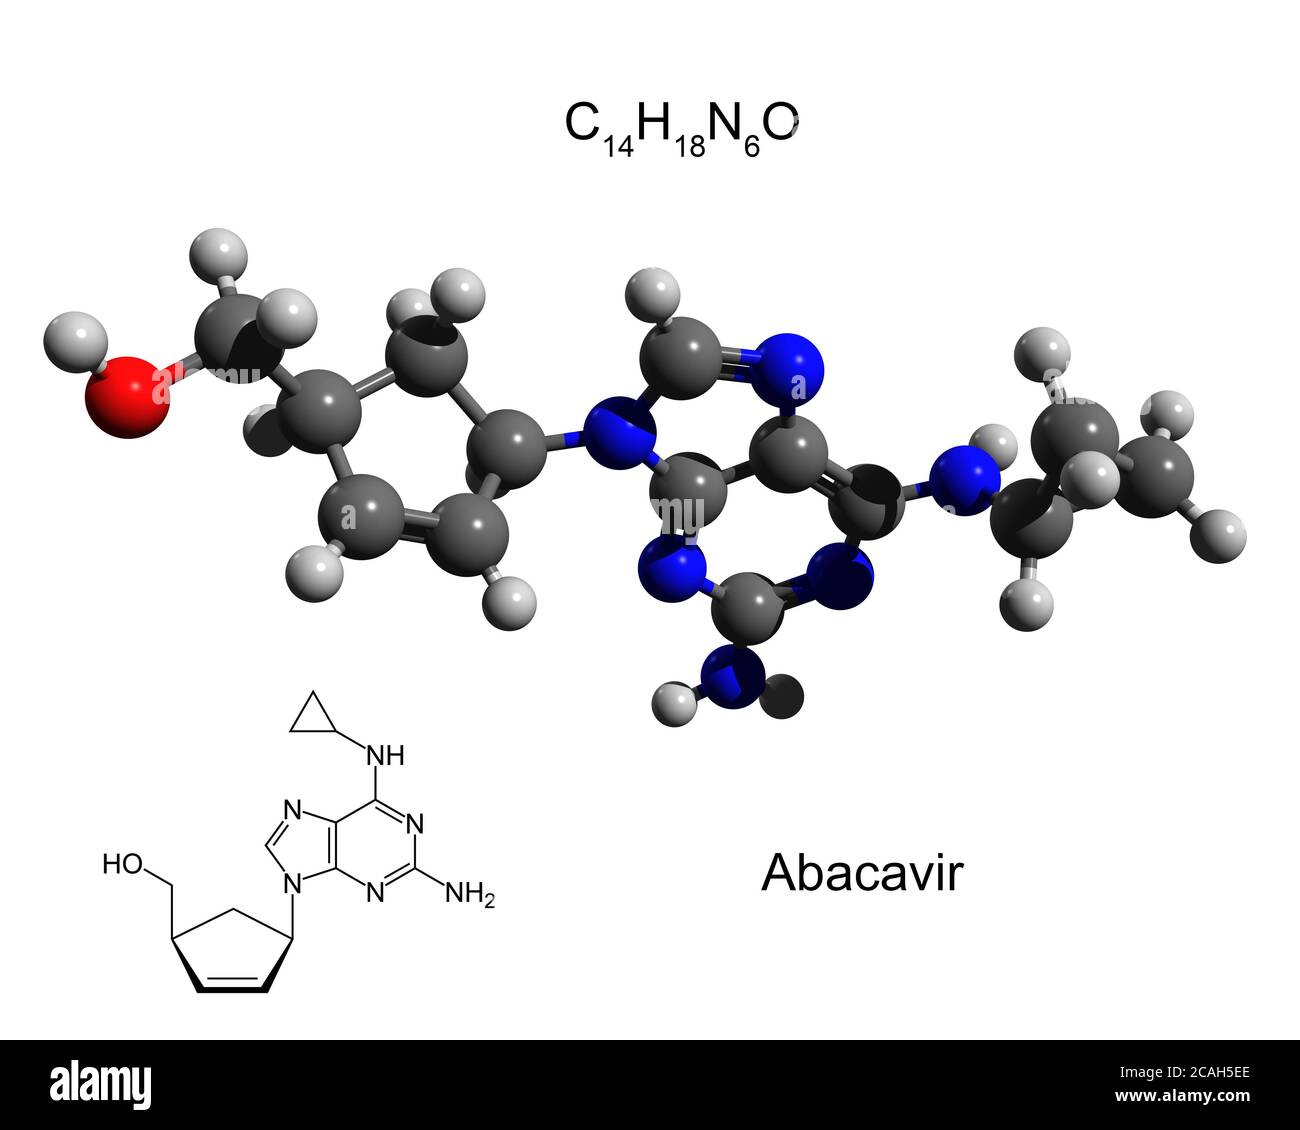 Formula chimica, formula strutturale e modello 3D di abacavir, un farmaco antiretrovirale usato per prevenire e trattare l'HIV/AIDS Foto Stock